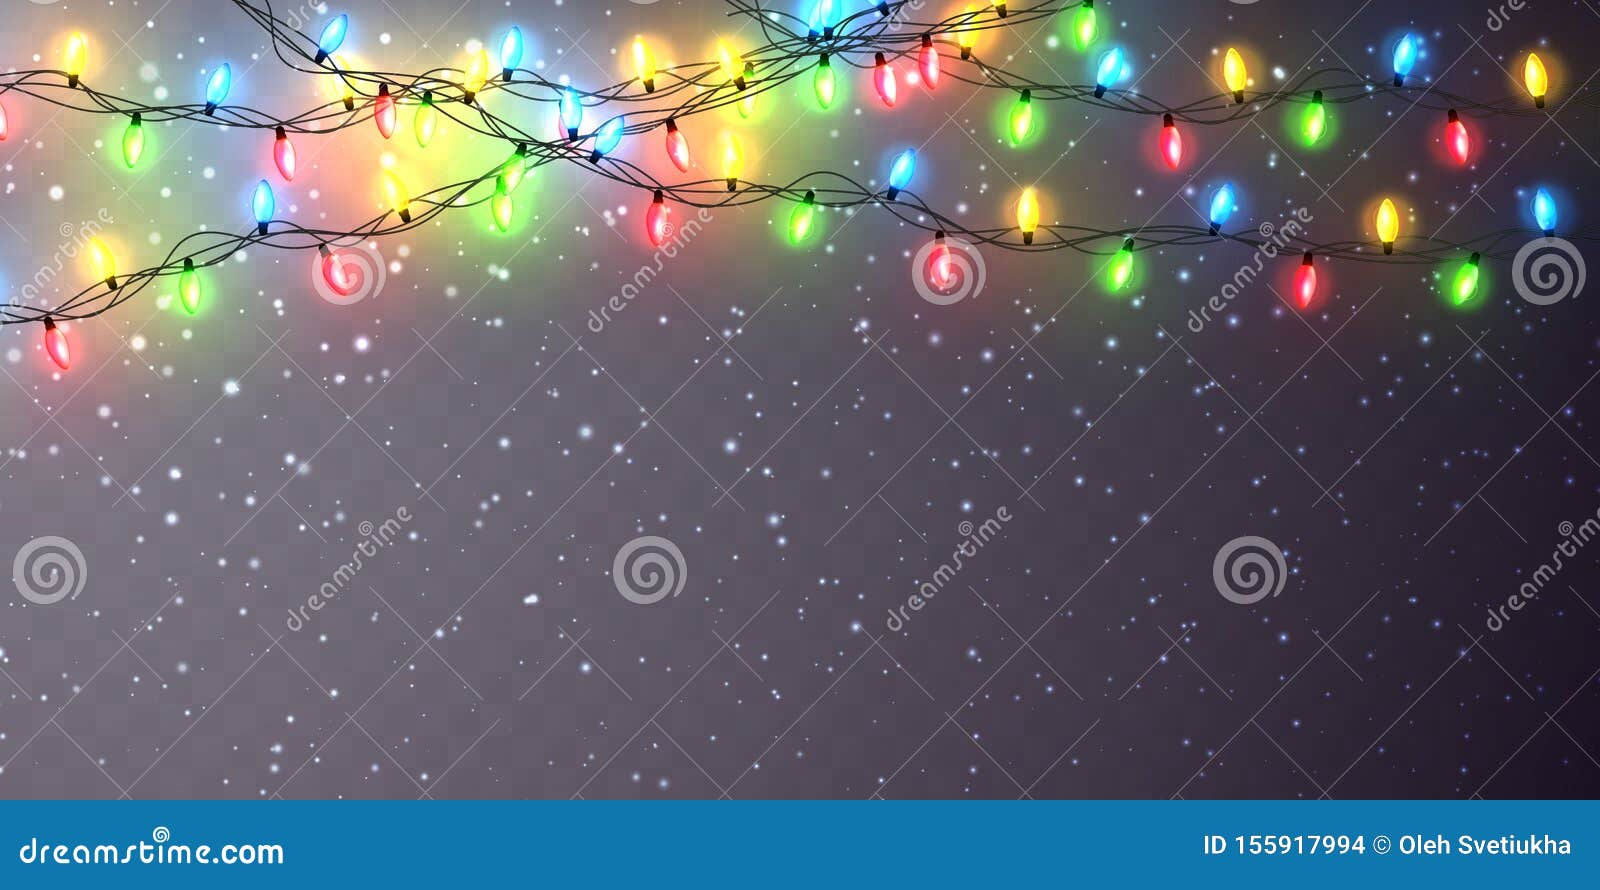 Ruy băng màu Noel và đèn phát sáng trong suốt sẽ làm cho mùa lễ hội của bạn trở nên tuyệt vời hơn bao giờ hết. Hãy để những chiếc đèn độc đáo này truyền cảm hứng cho cuộc sống của bạn.